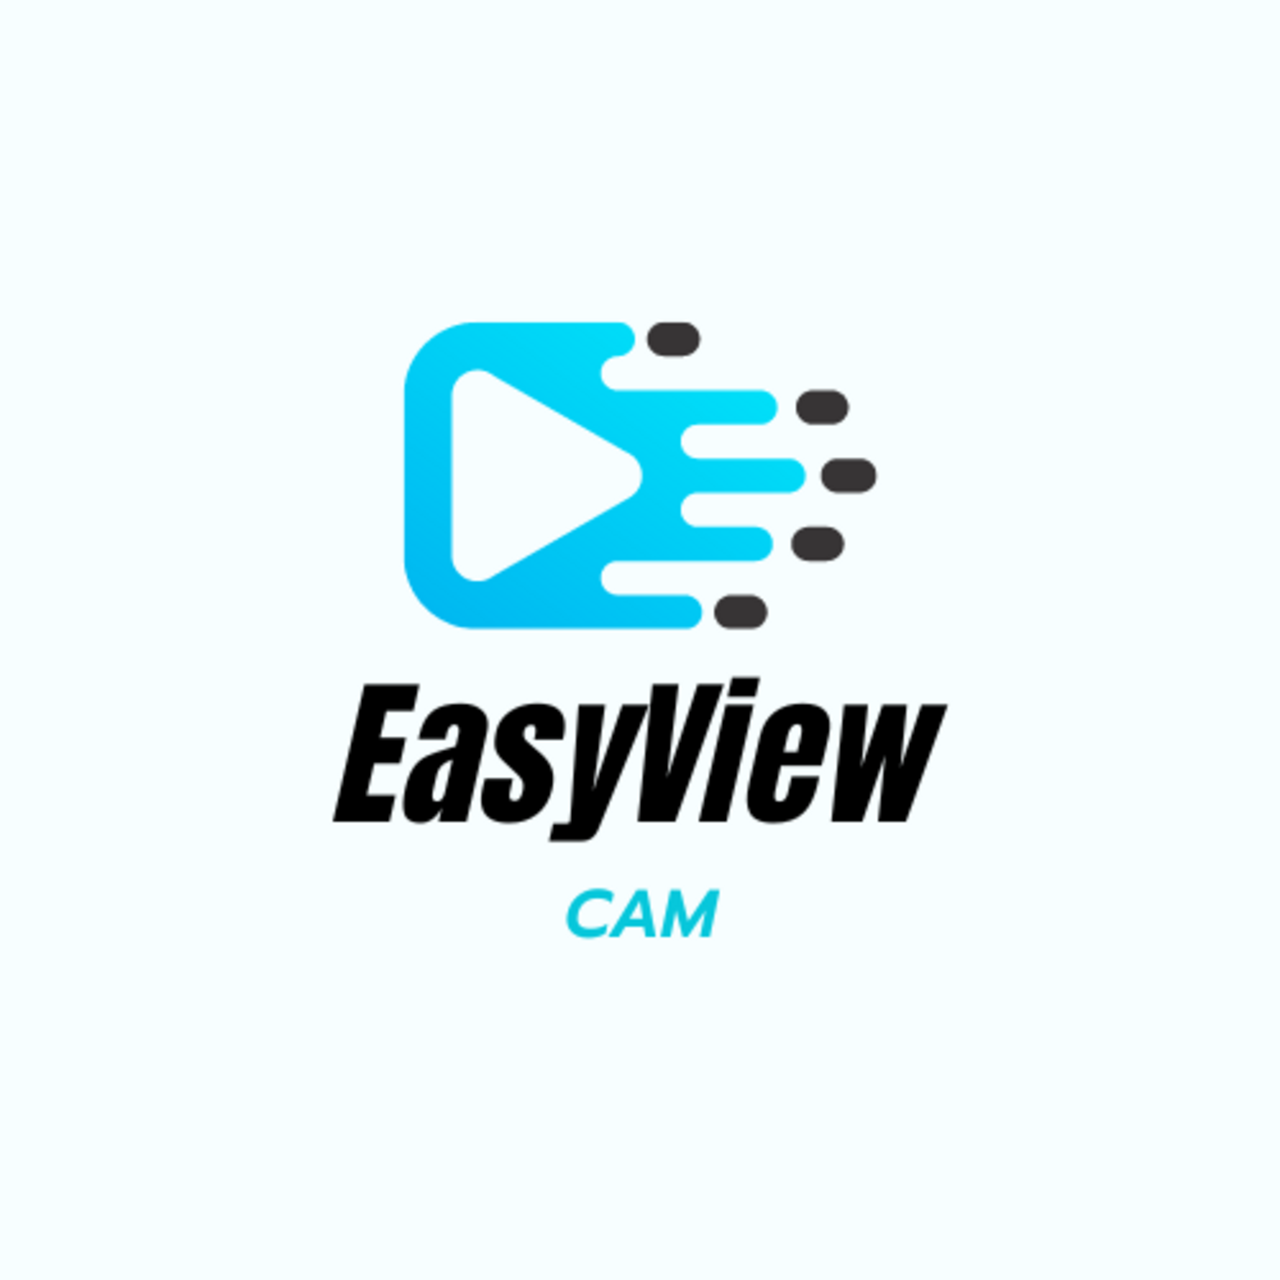 Easy View Cam's logo